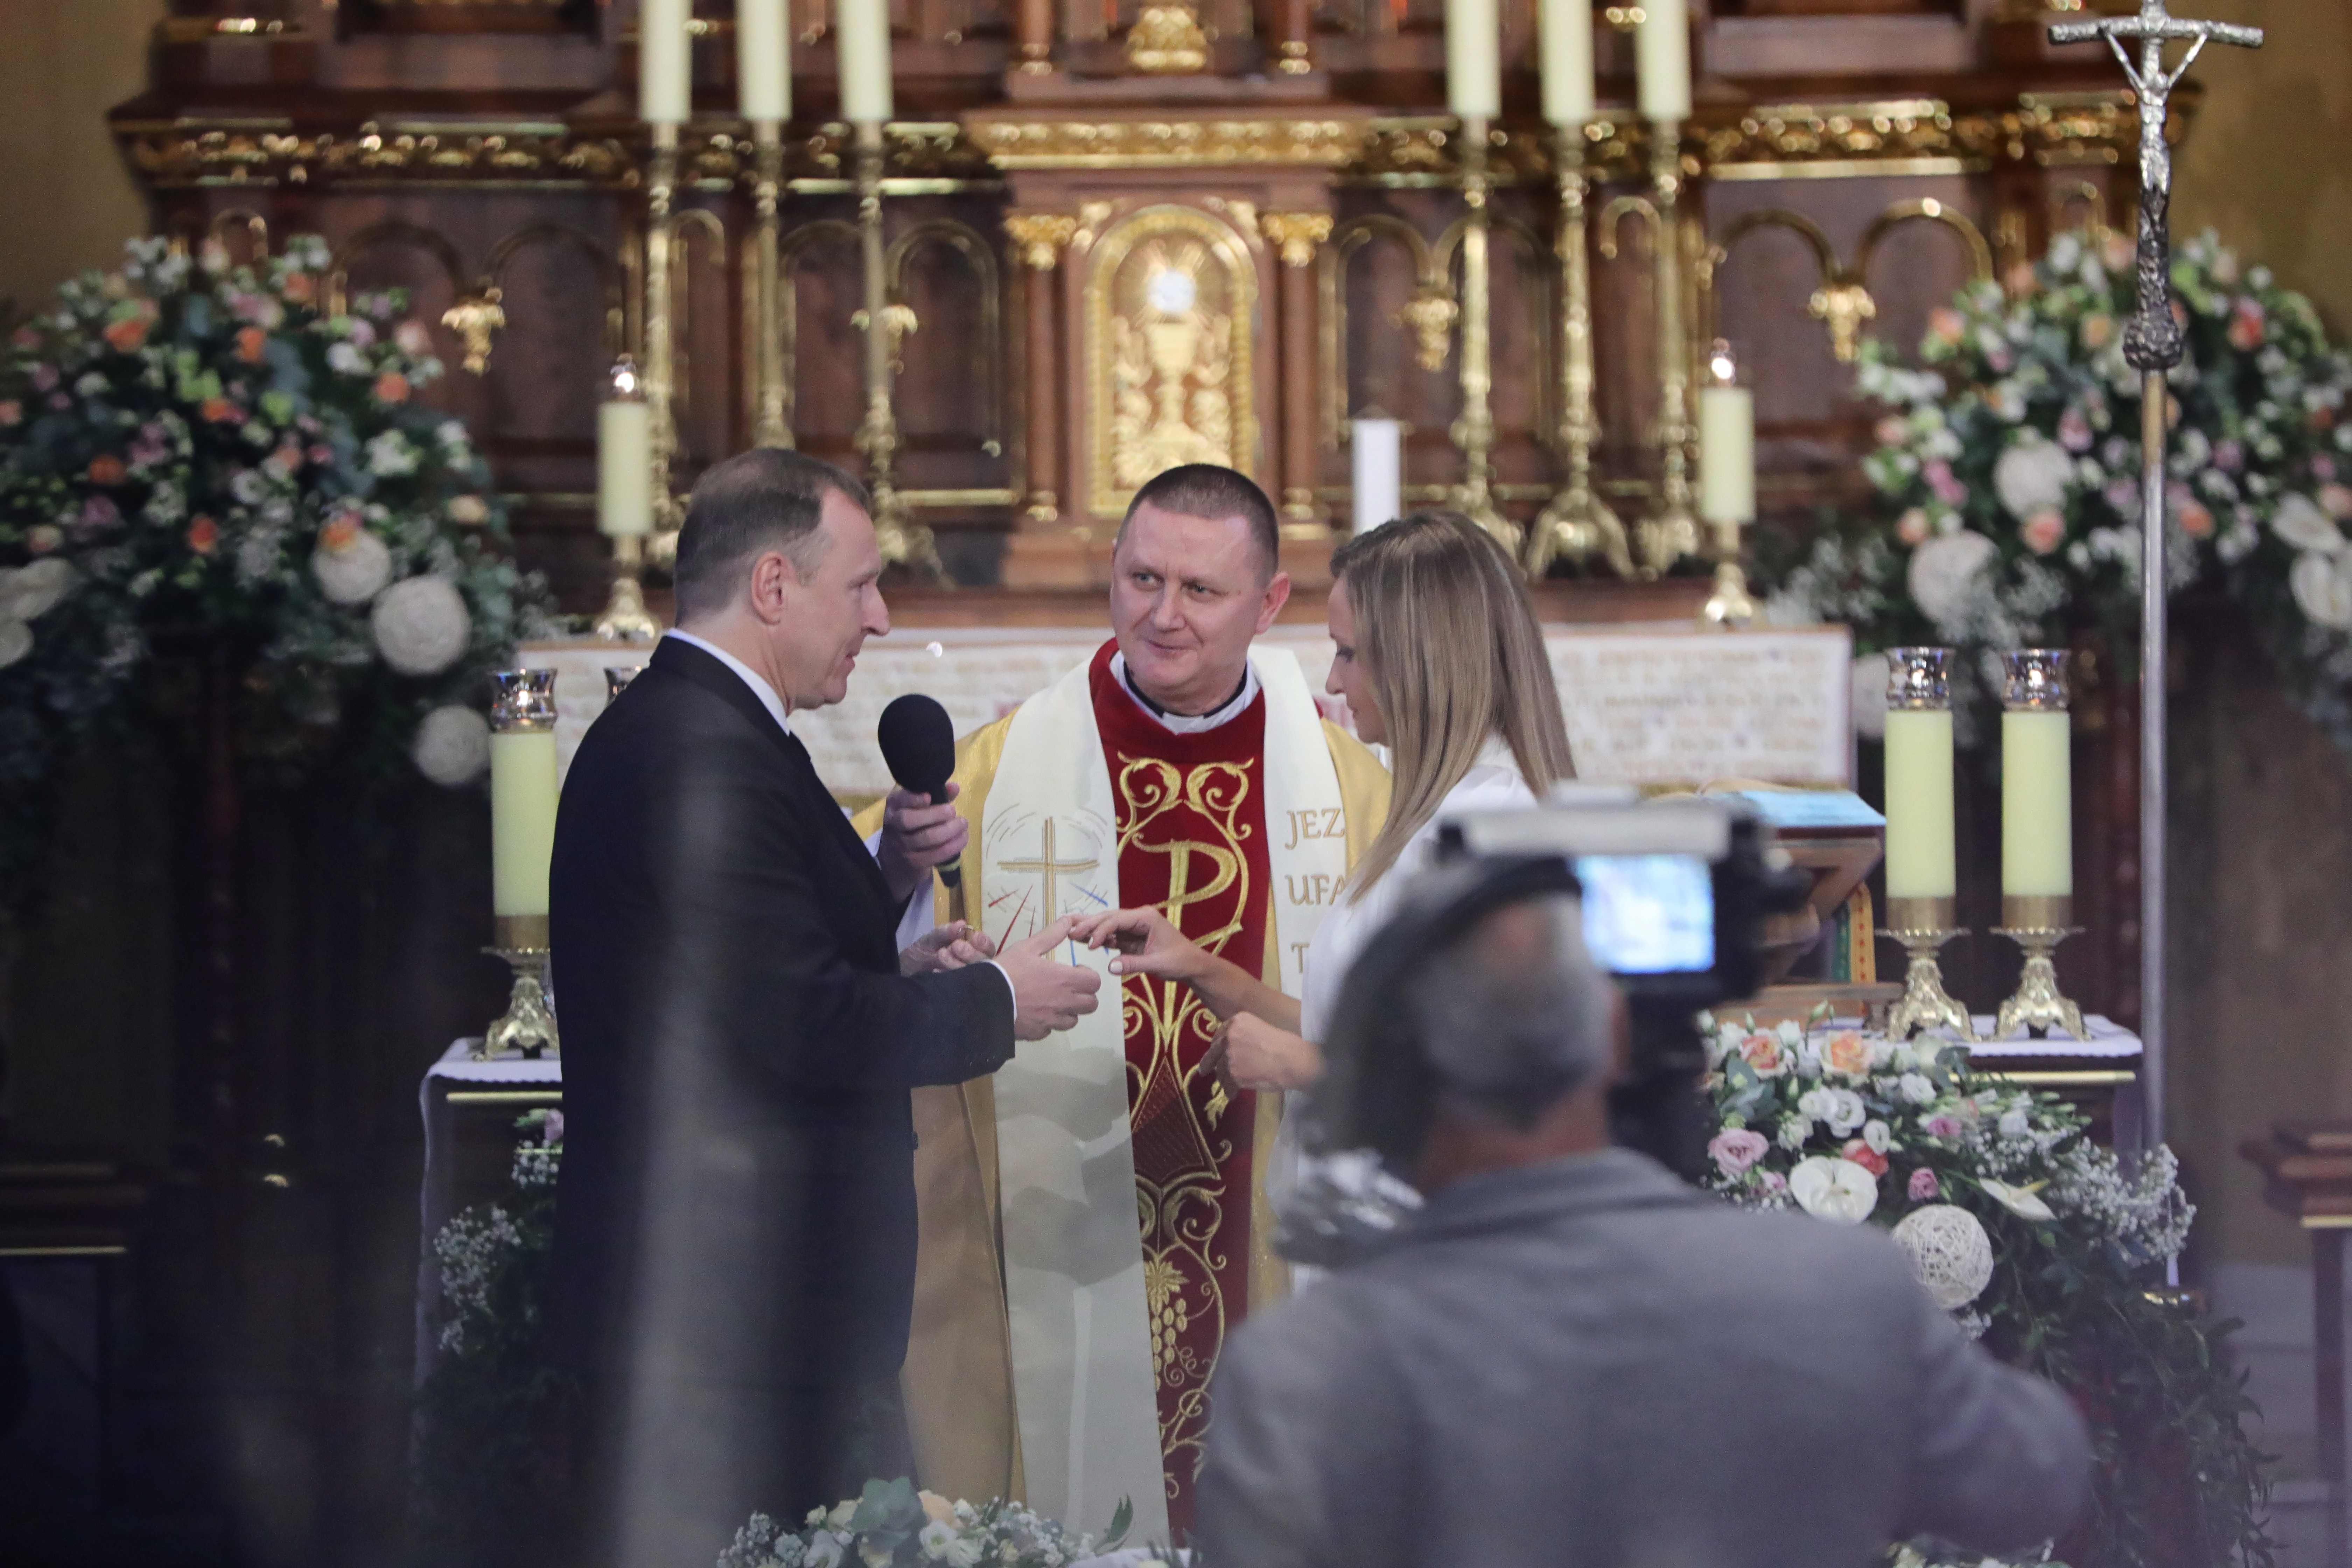 Ślub Jacka Kurskiego w Łagiewnikach. Zgodę wyrażono na polecenie abpa  Jędraszewskiego - Wiadomości